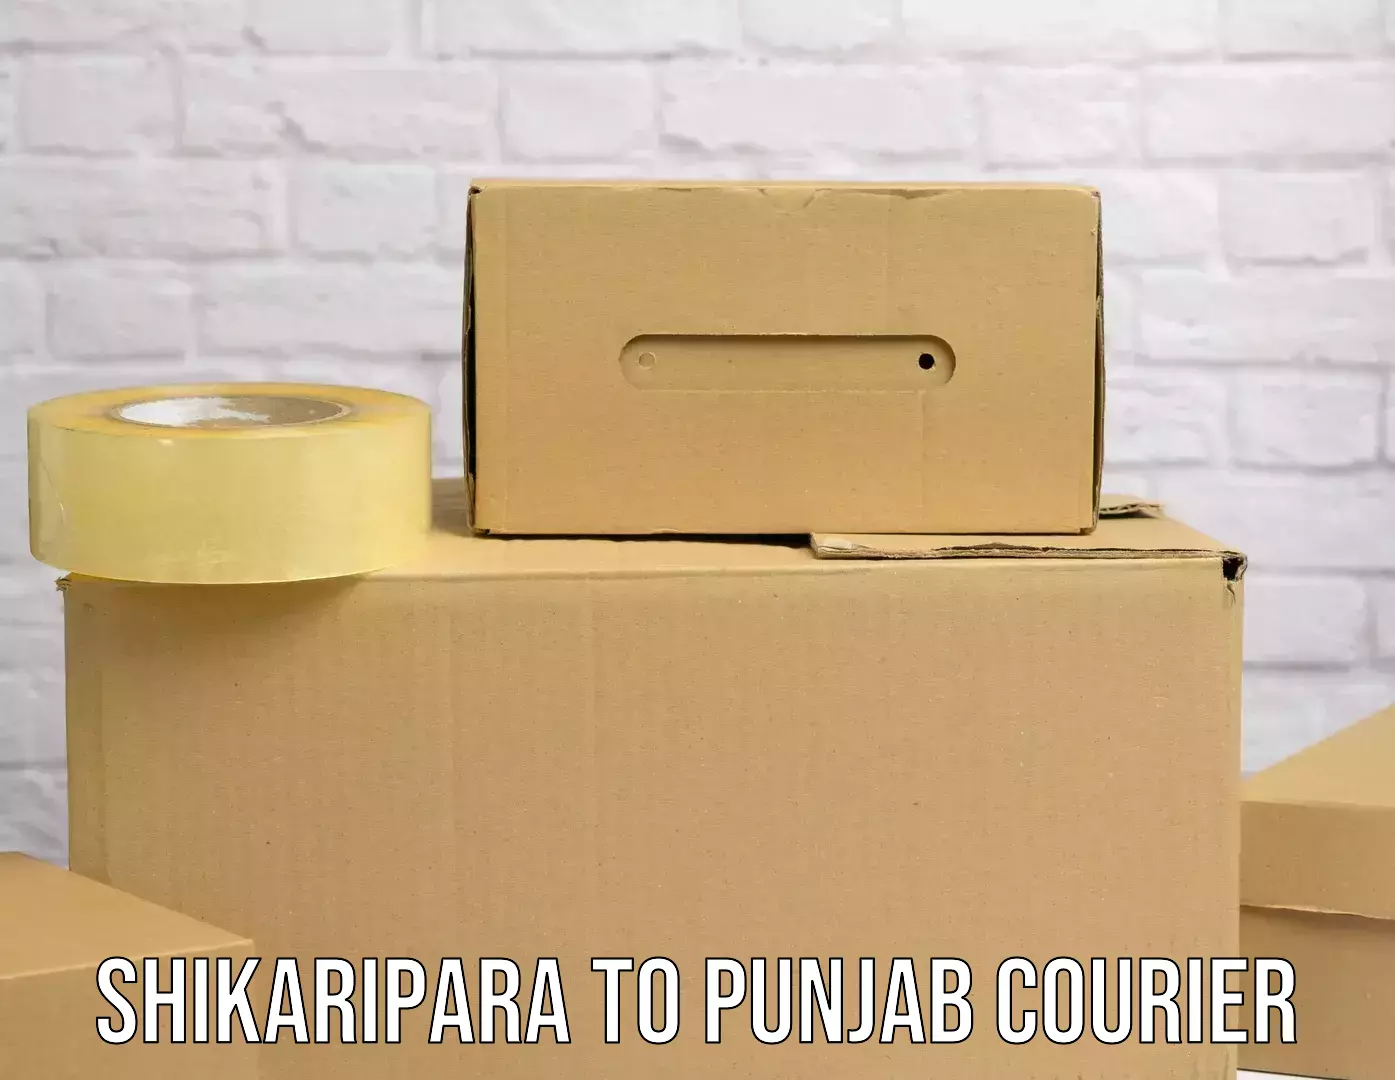 Multi-package shipping Shikaripara to Punjab